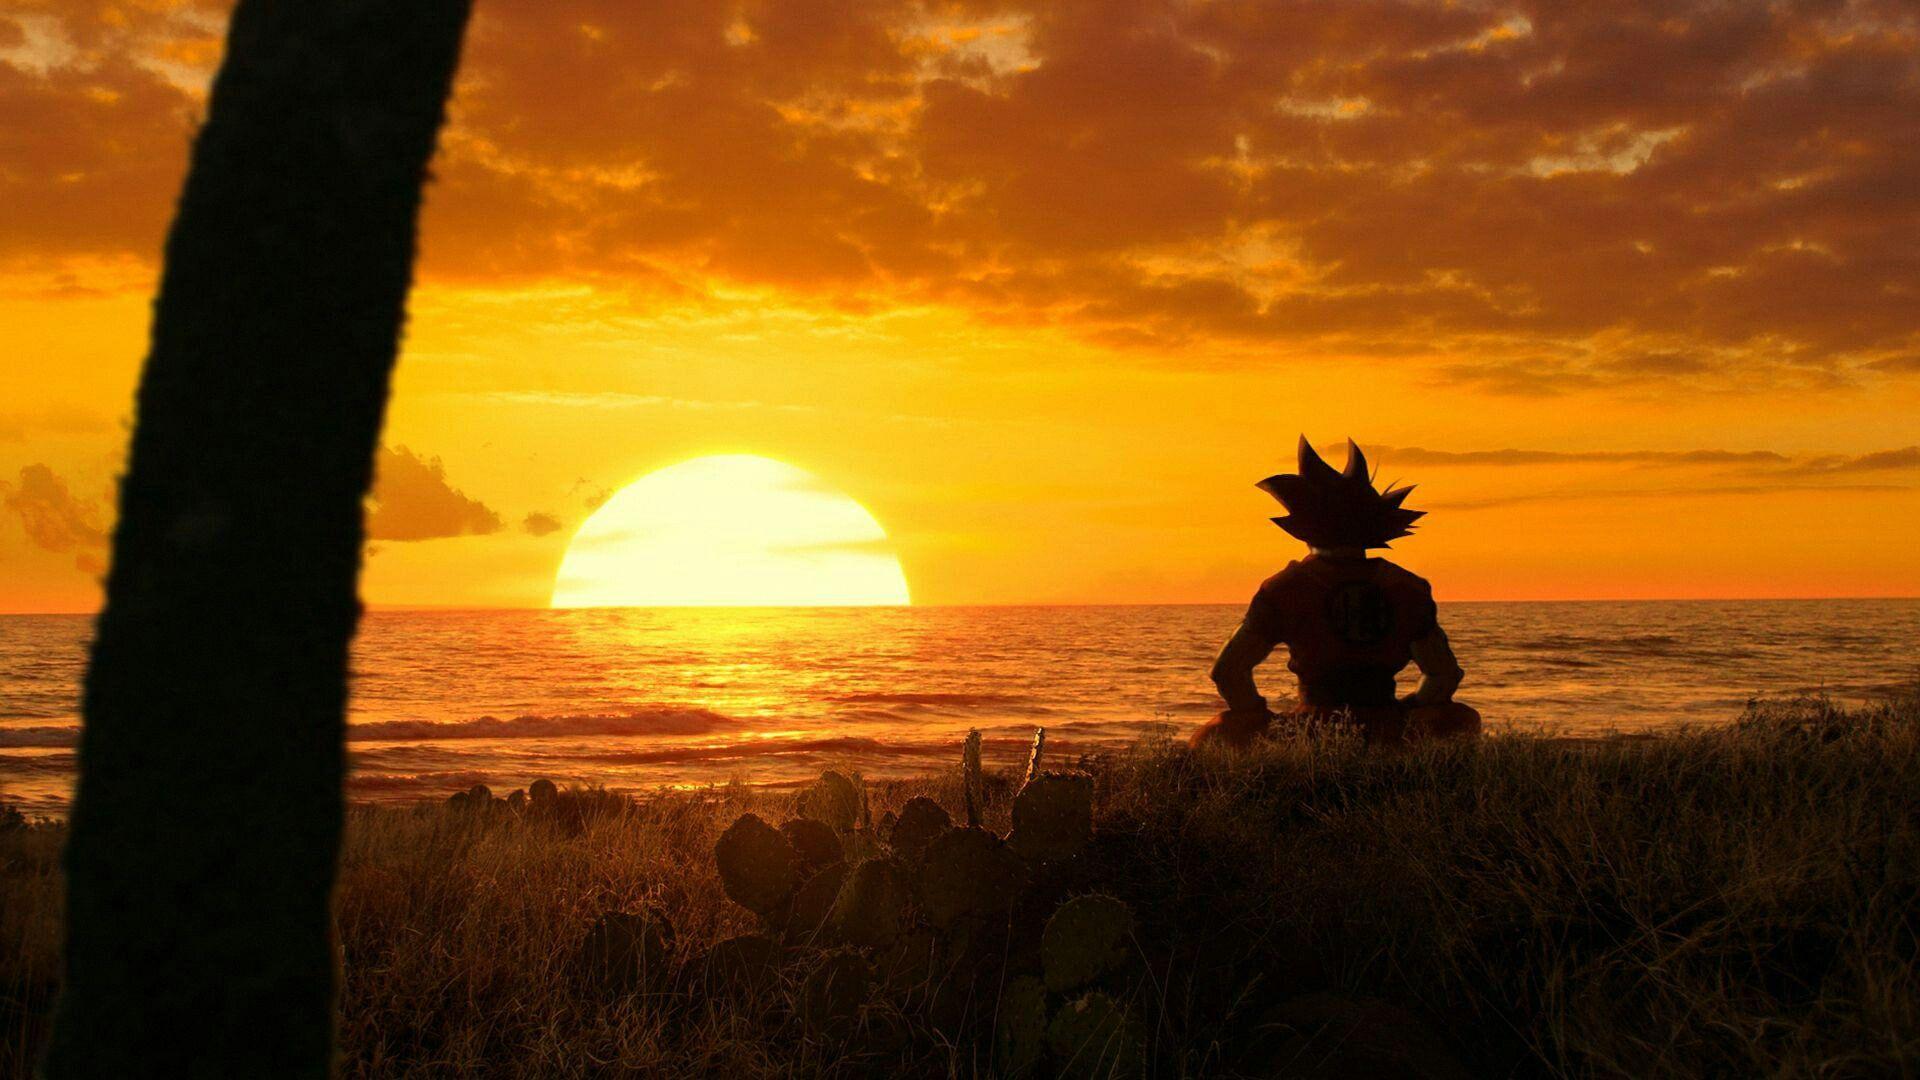 Goku Sunset Wallpapers - Top Free Goku Sunset Backgrounds - WallpaperAccess